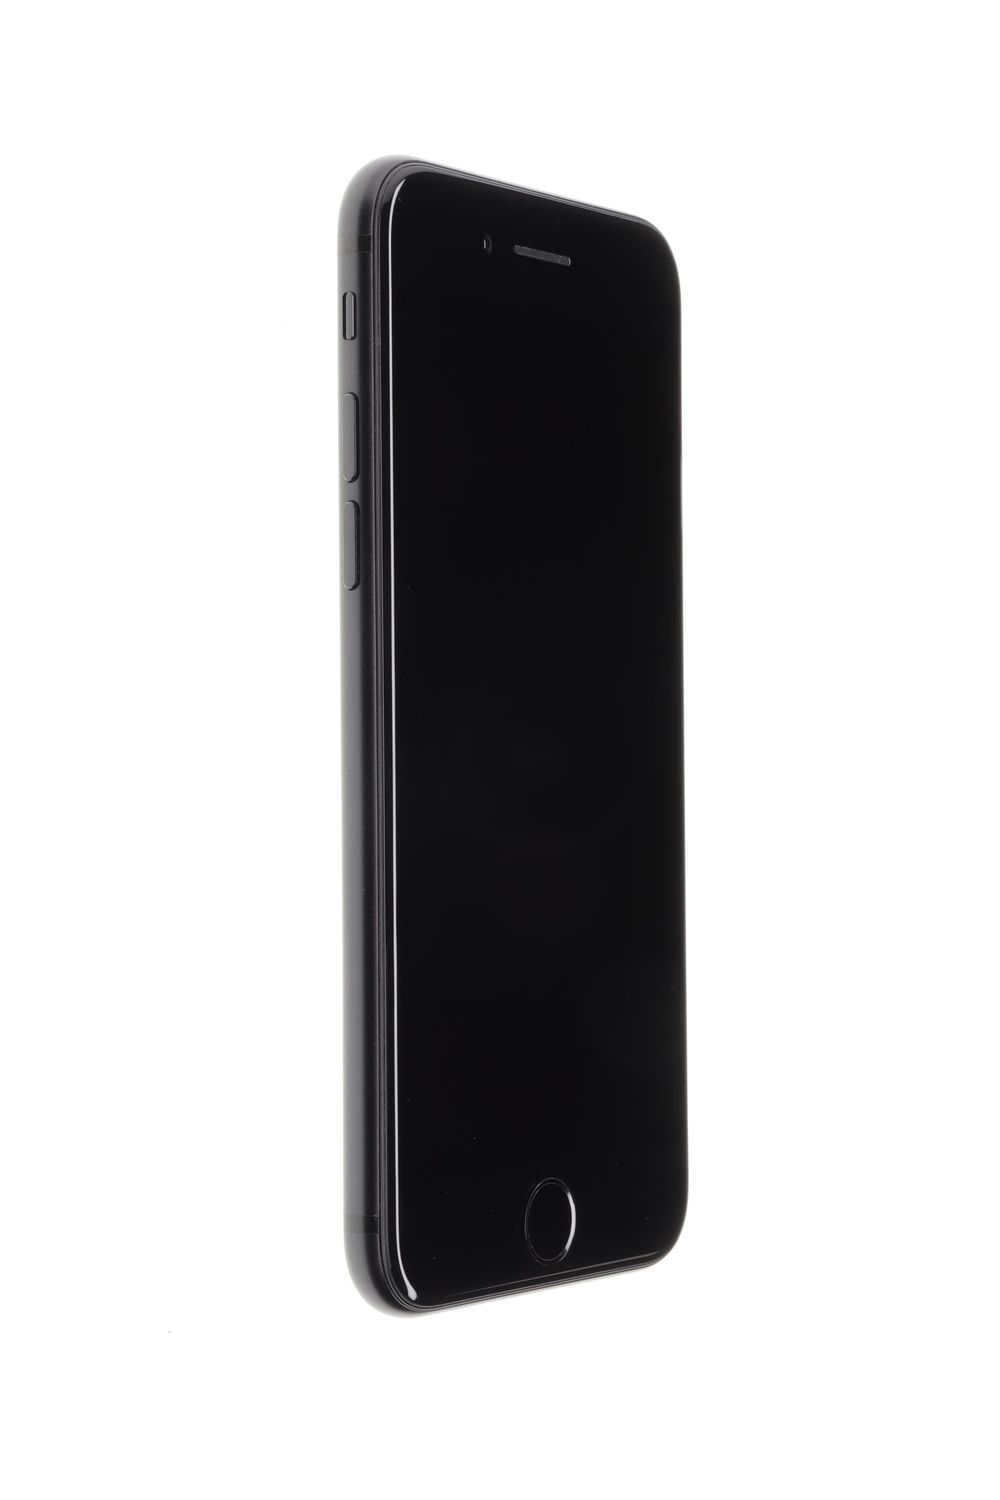 Mobiltelefon Apple iPhone SE 2020, Black, 64 GB, Excelent